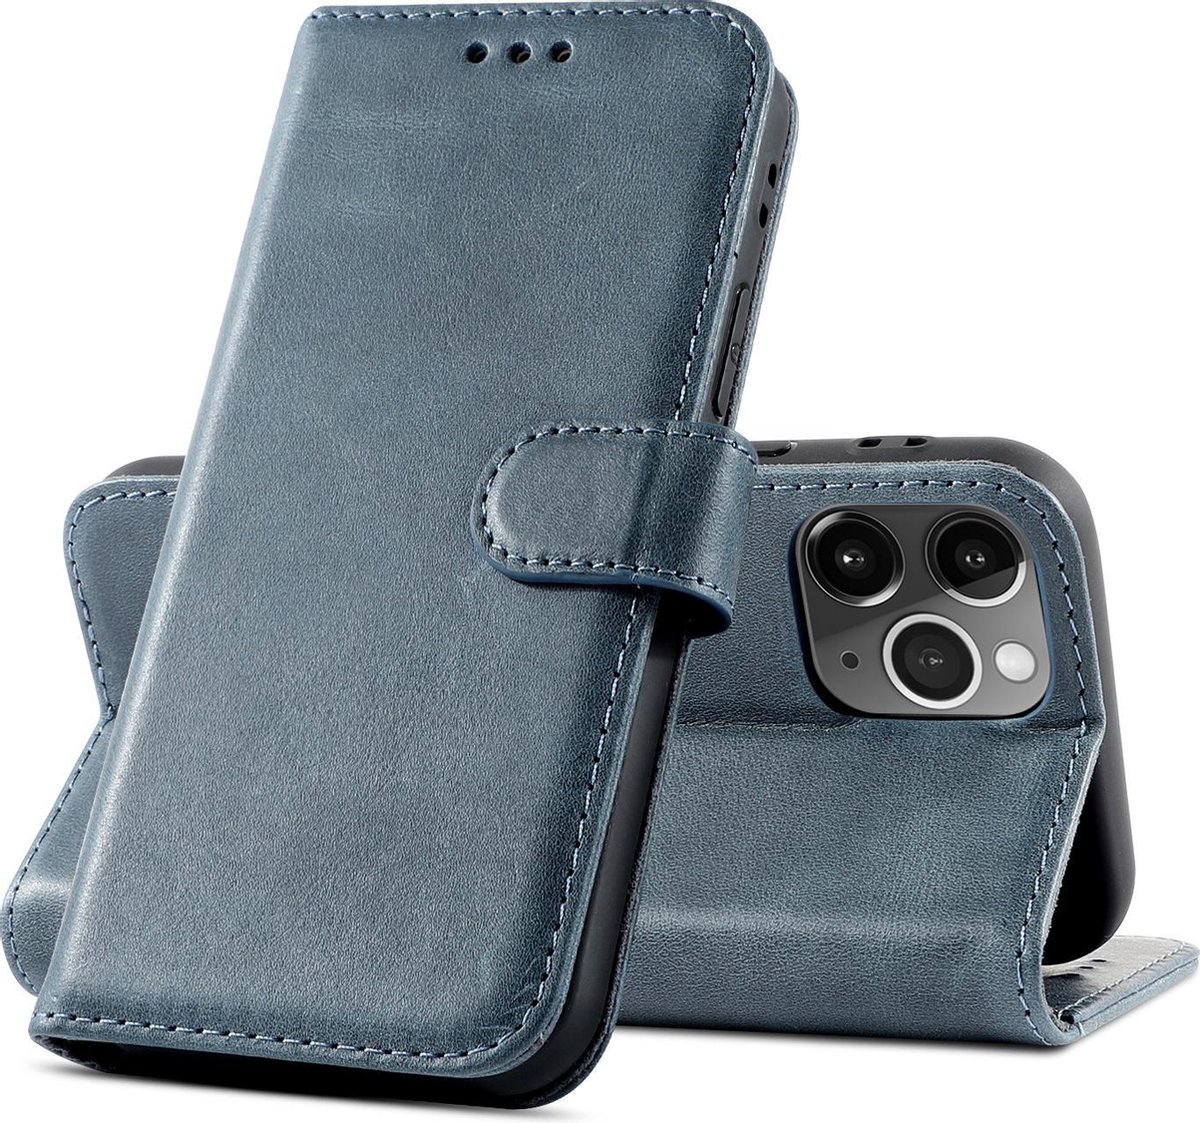 Klassiek Design - Echt Lederen Hoesje - Book Case Telefoonhoesje - Echt Leren Portemonnee Wallet Case - iPhone 12 Pro Max - Navy